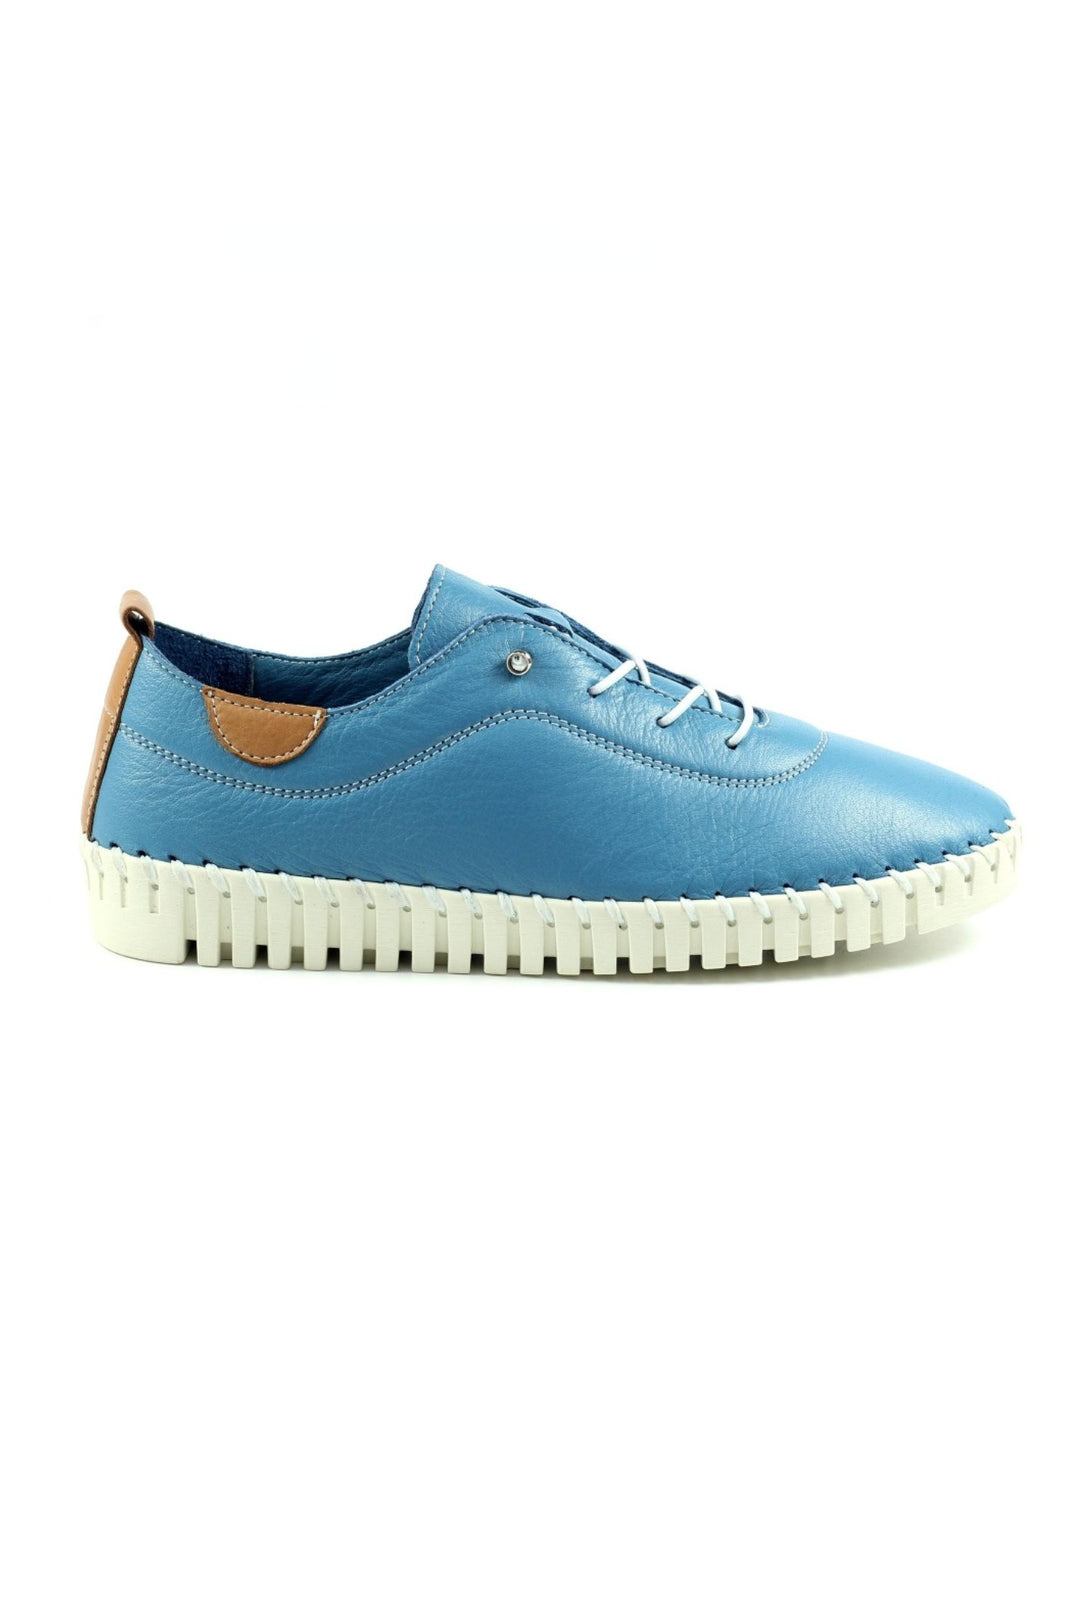 Lunar FLM011 Mid Blue Flamborough Leather Shoes